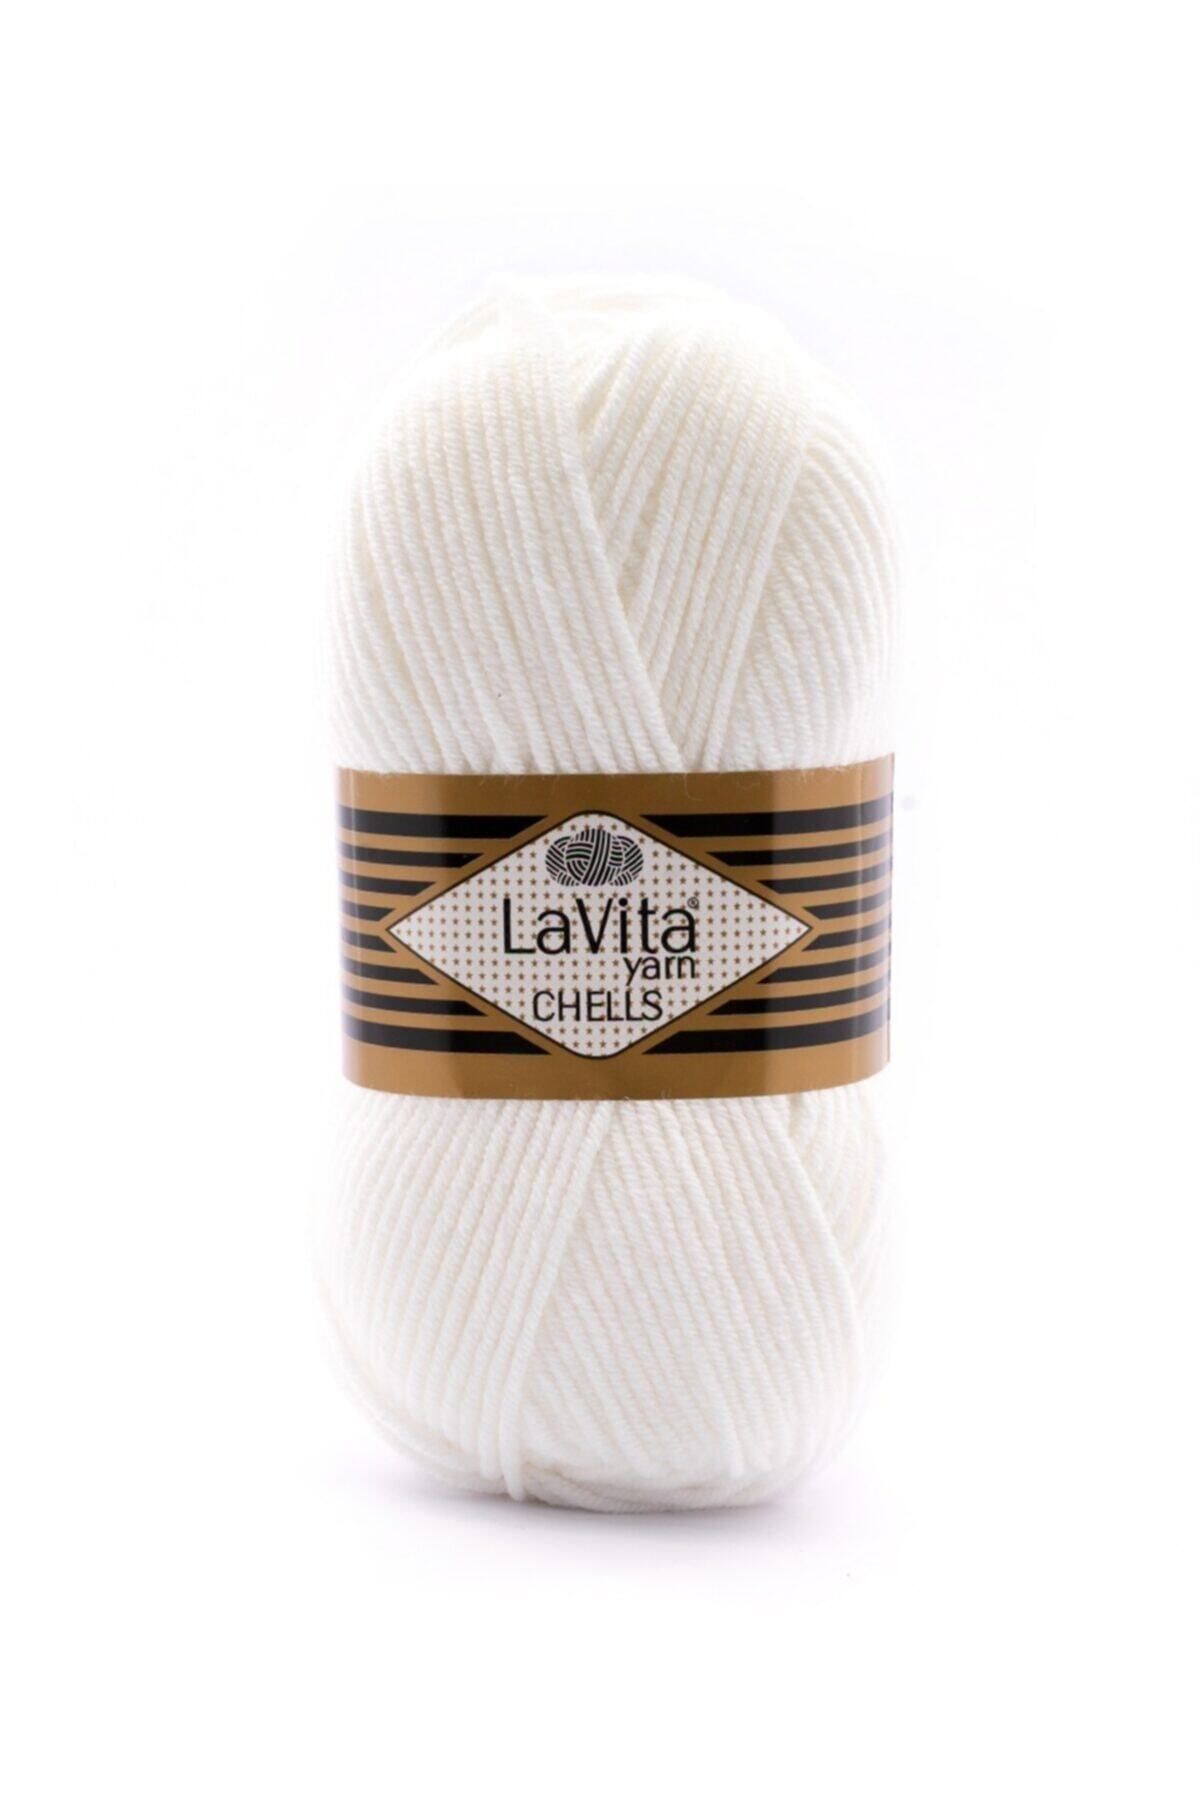 LaVita Yarn La Vita Yarn Chells El Örgü Ipi 9501 Beyaz - Örgü Iplik